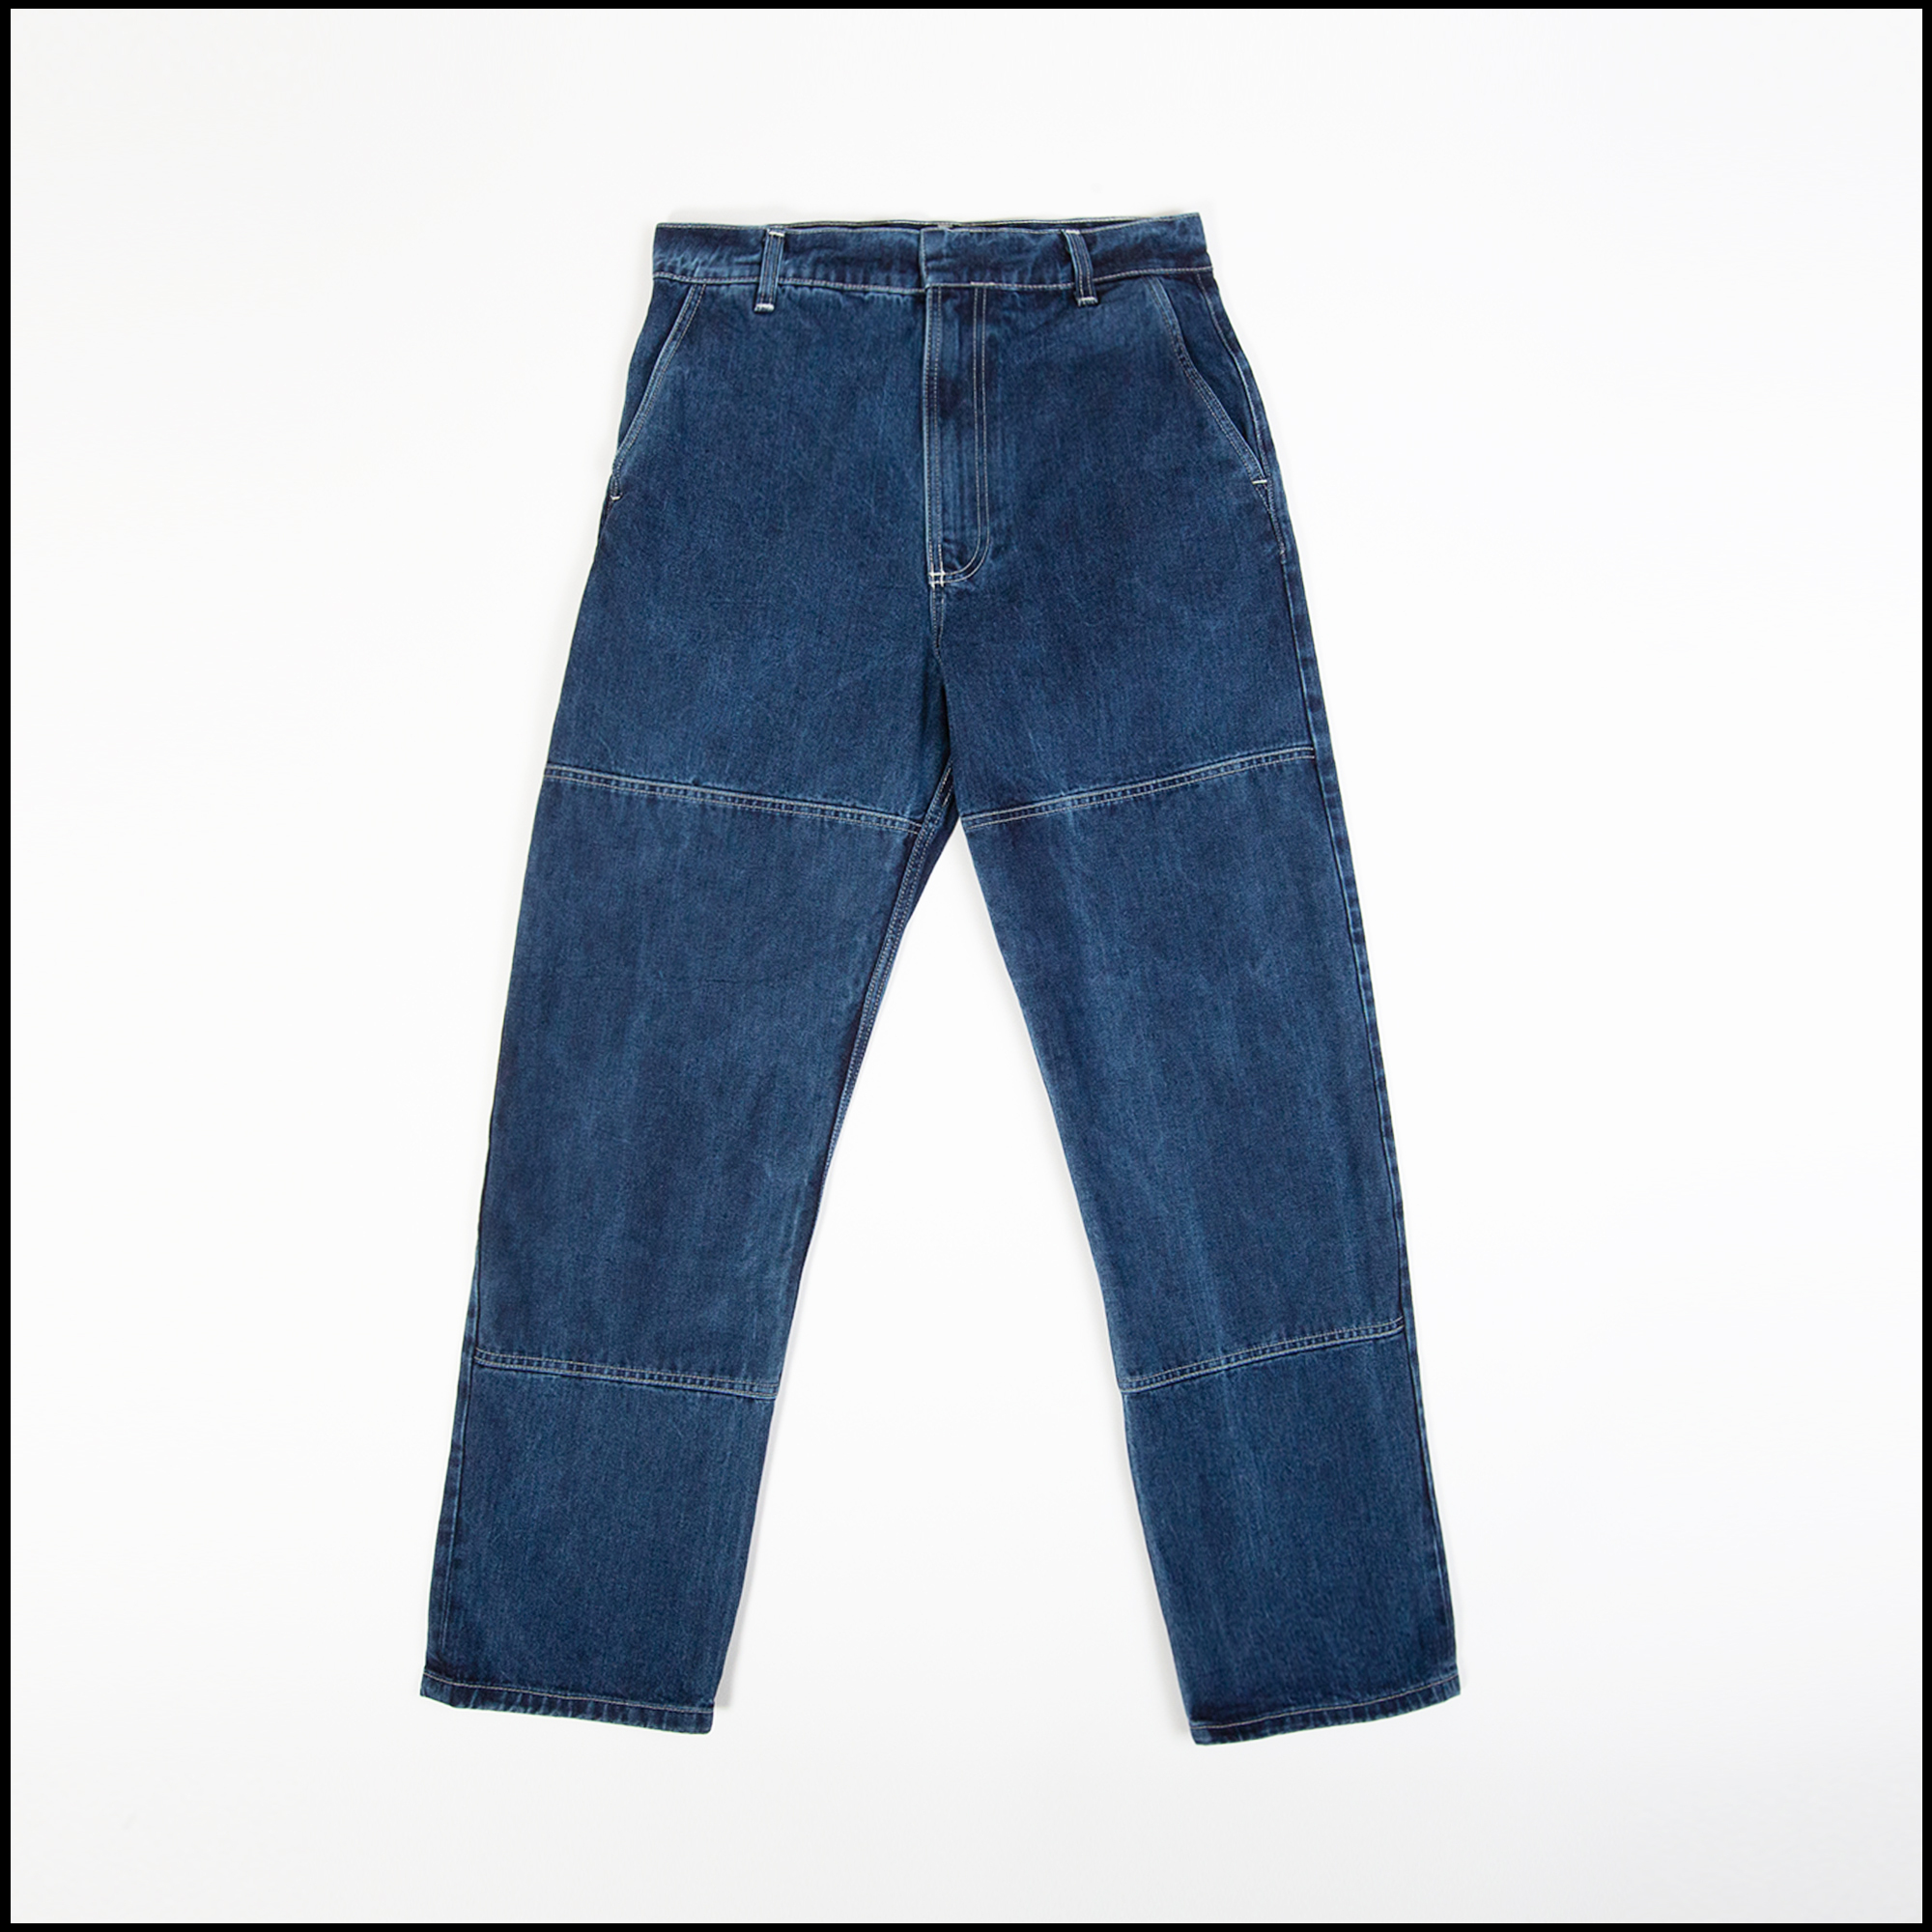 4 POCKET pants in Washed indigo color by Arpenteur